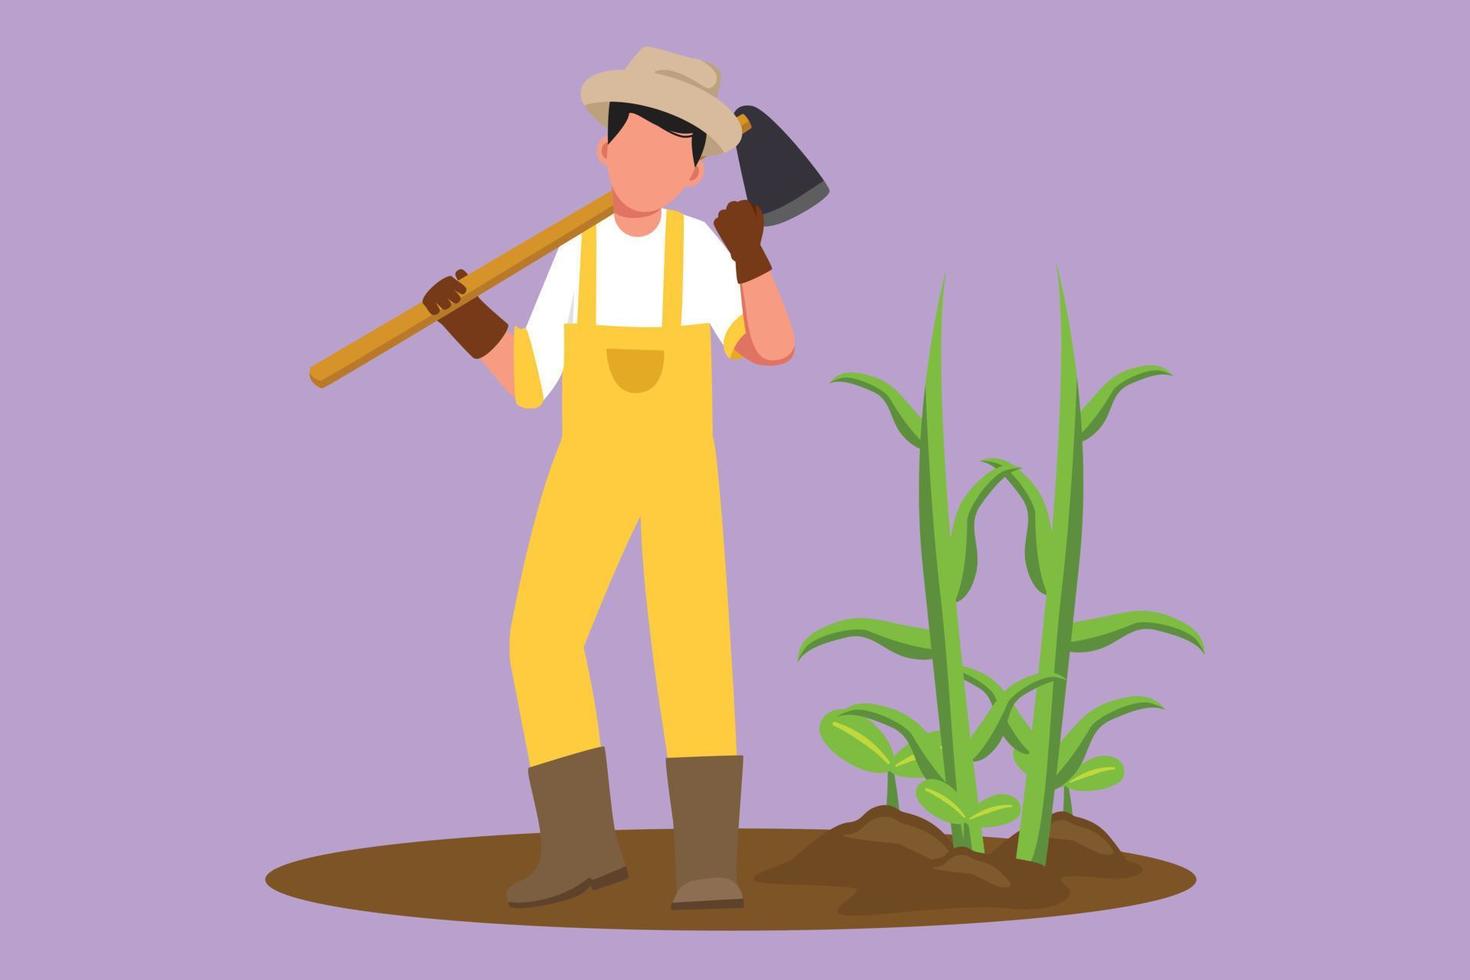 flacher karikaturzeichnungsbauer, der mit feiernder geste steht, strohhut trägt, schaufel trägt, um ernte zu pflanzen oder ackerland zu ernten. ländlicher Landarbeiter. Grafikdesign-Vektorillustration vektor